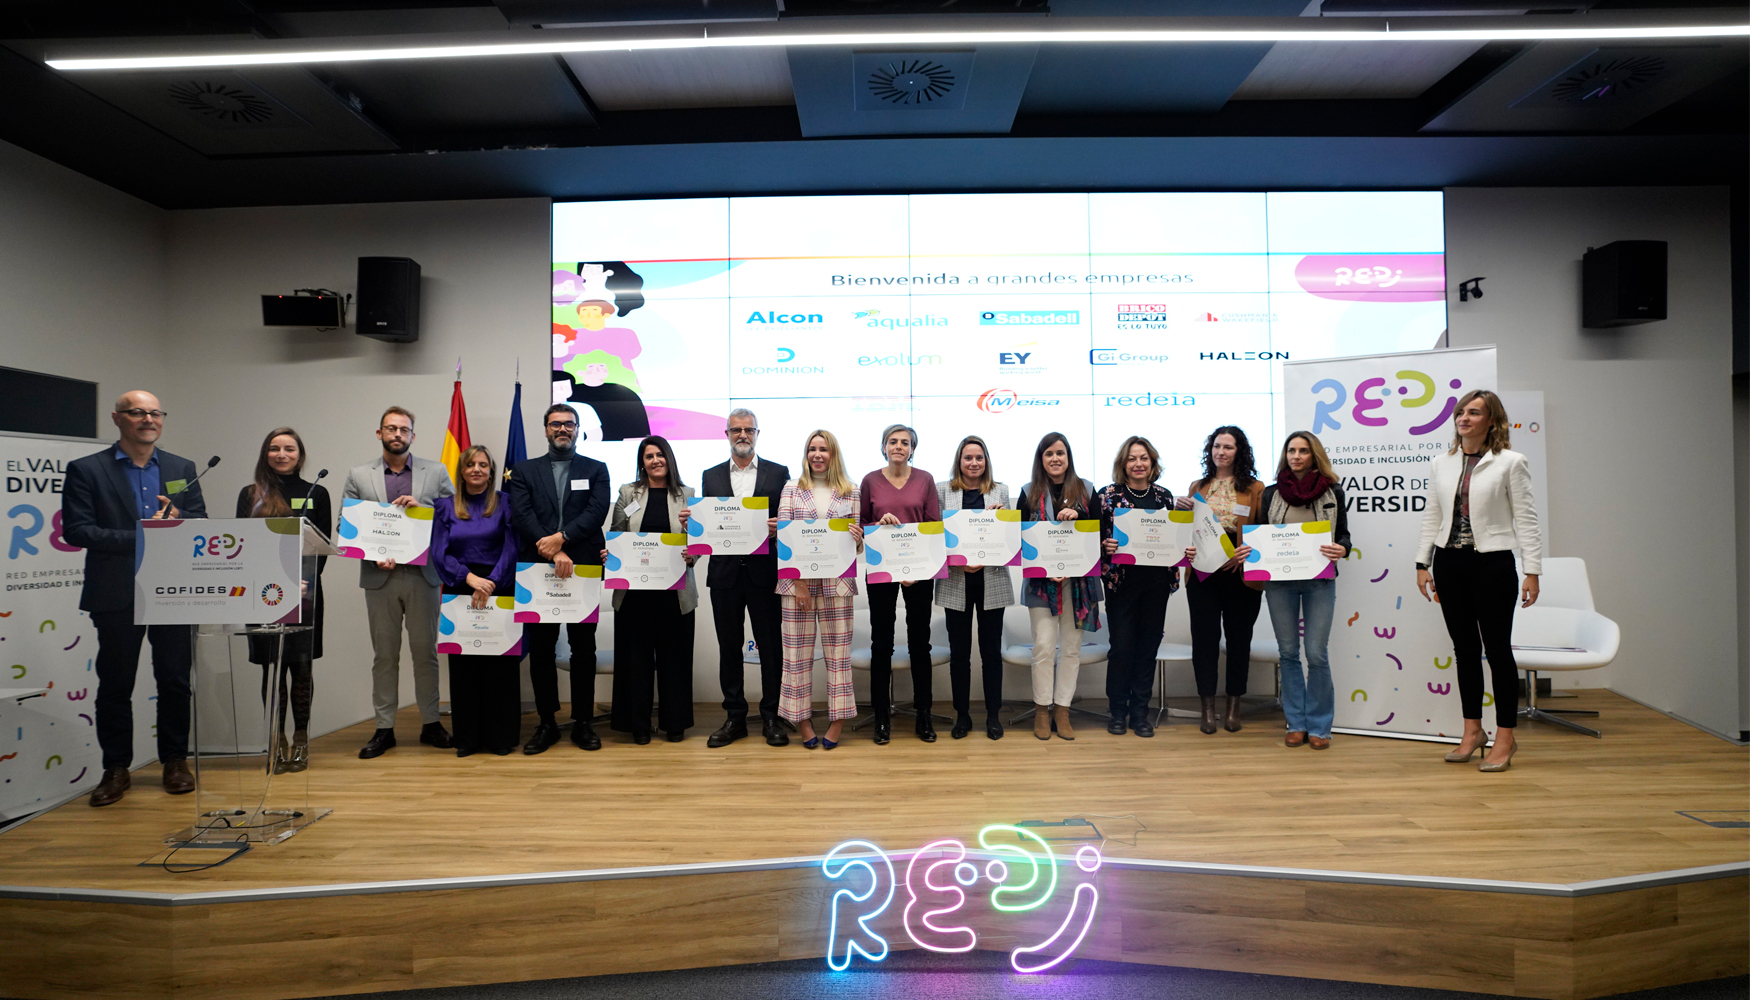 Redi es una red de empresas formada con el objetivo de potenciar la visibilidad e inclusin del talento, con independencia de la orientacin sexual...